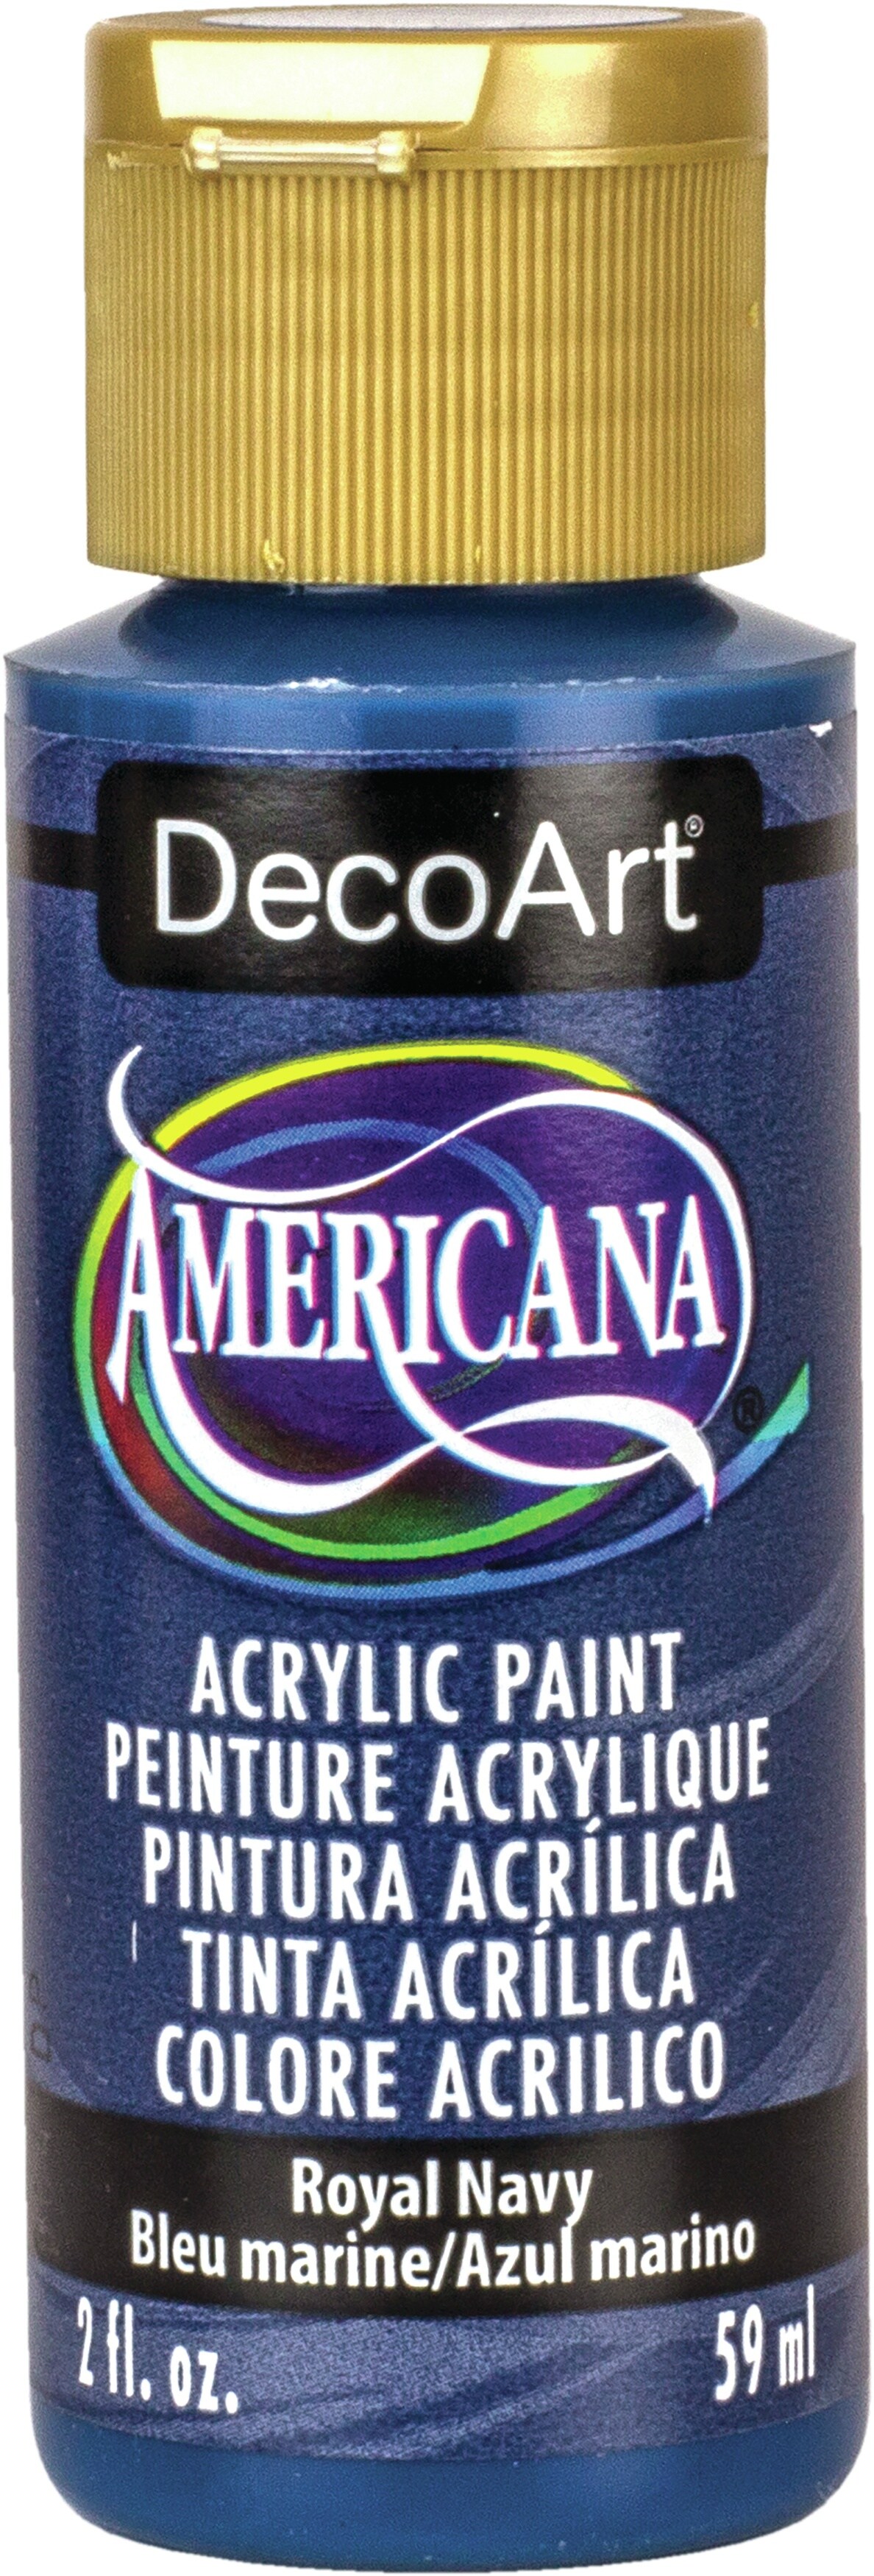 DecoArt Americana Acrylic Paint 2oz-Royal Navy